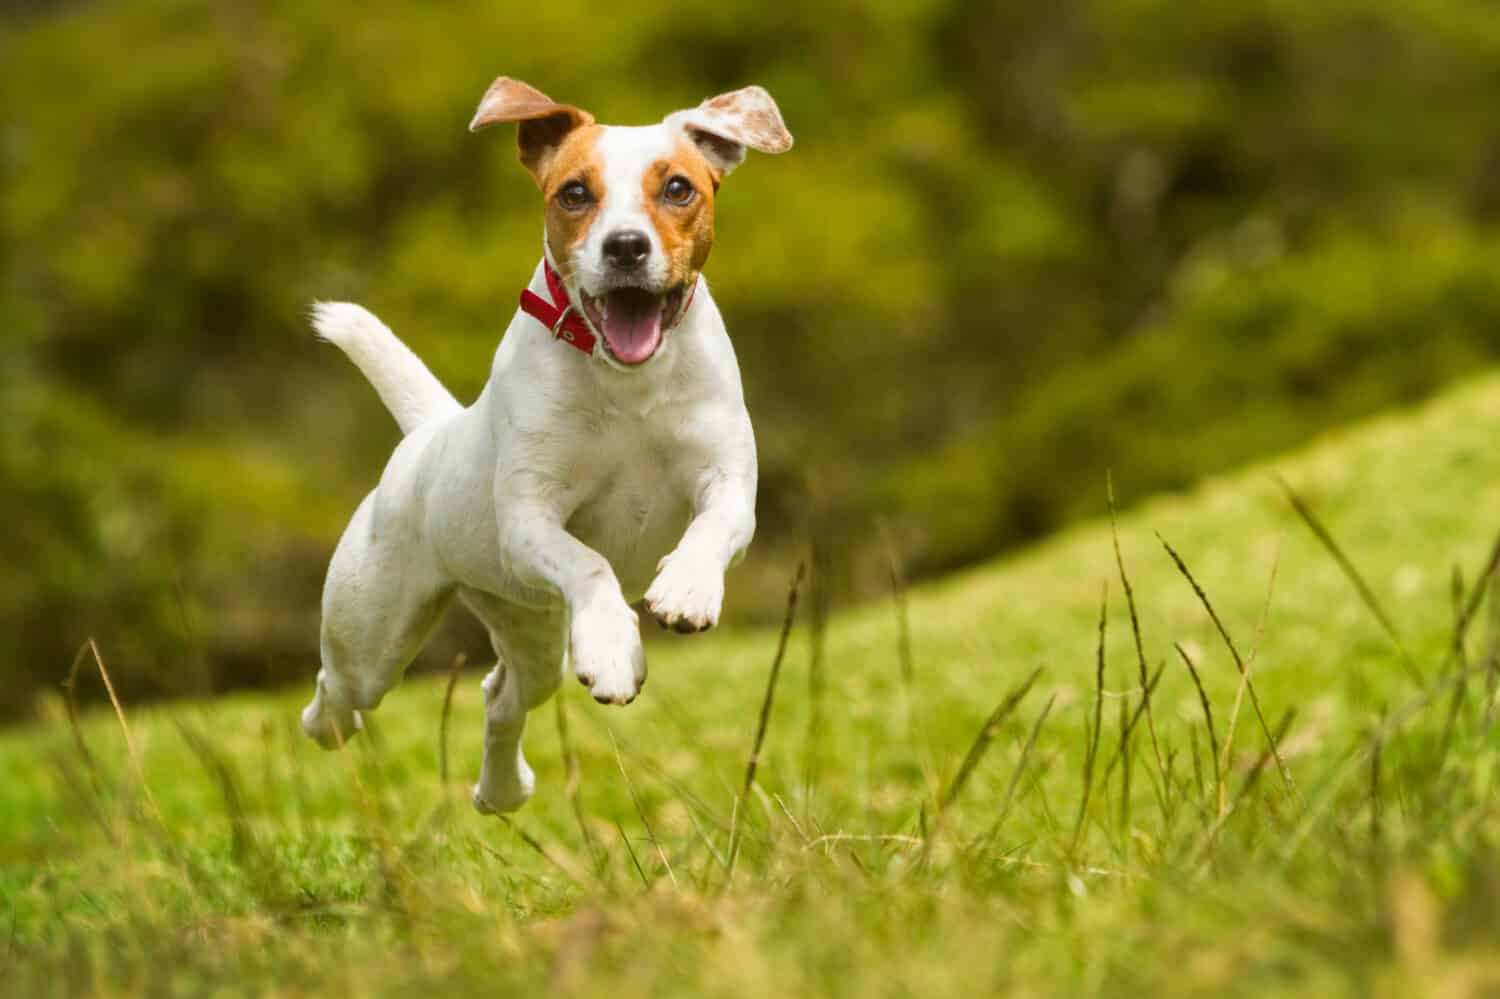 A dog running through a field. 